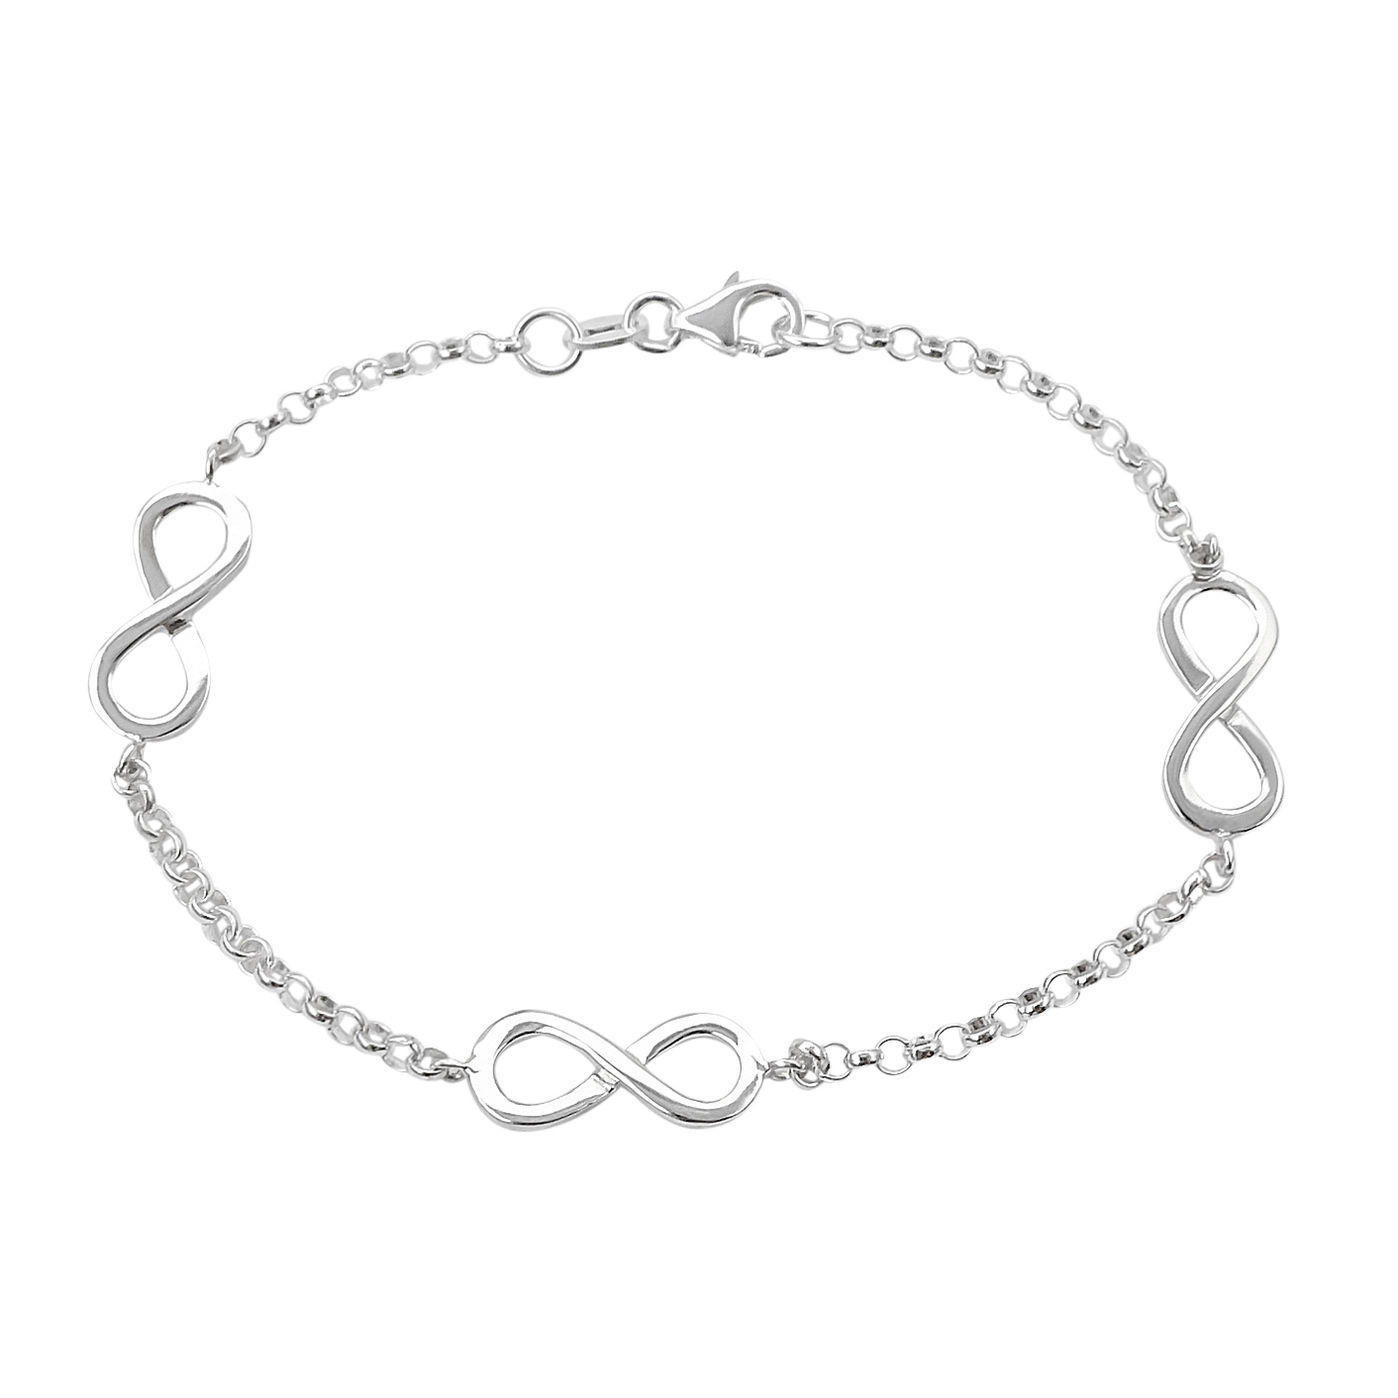 Ursula Christ Armband Infinity Silber 925 bestellen | Weltbild.de